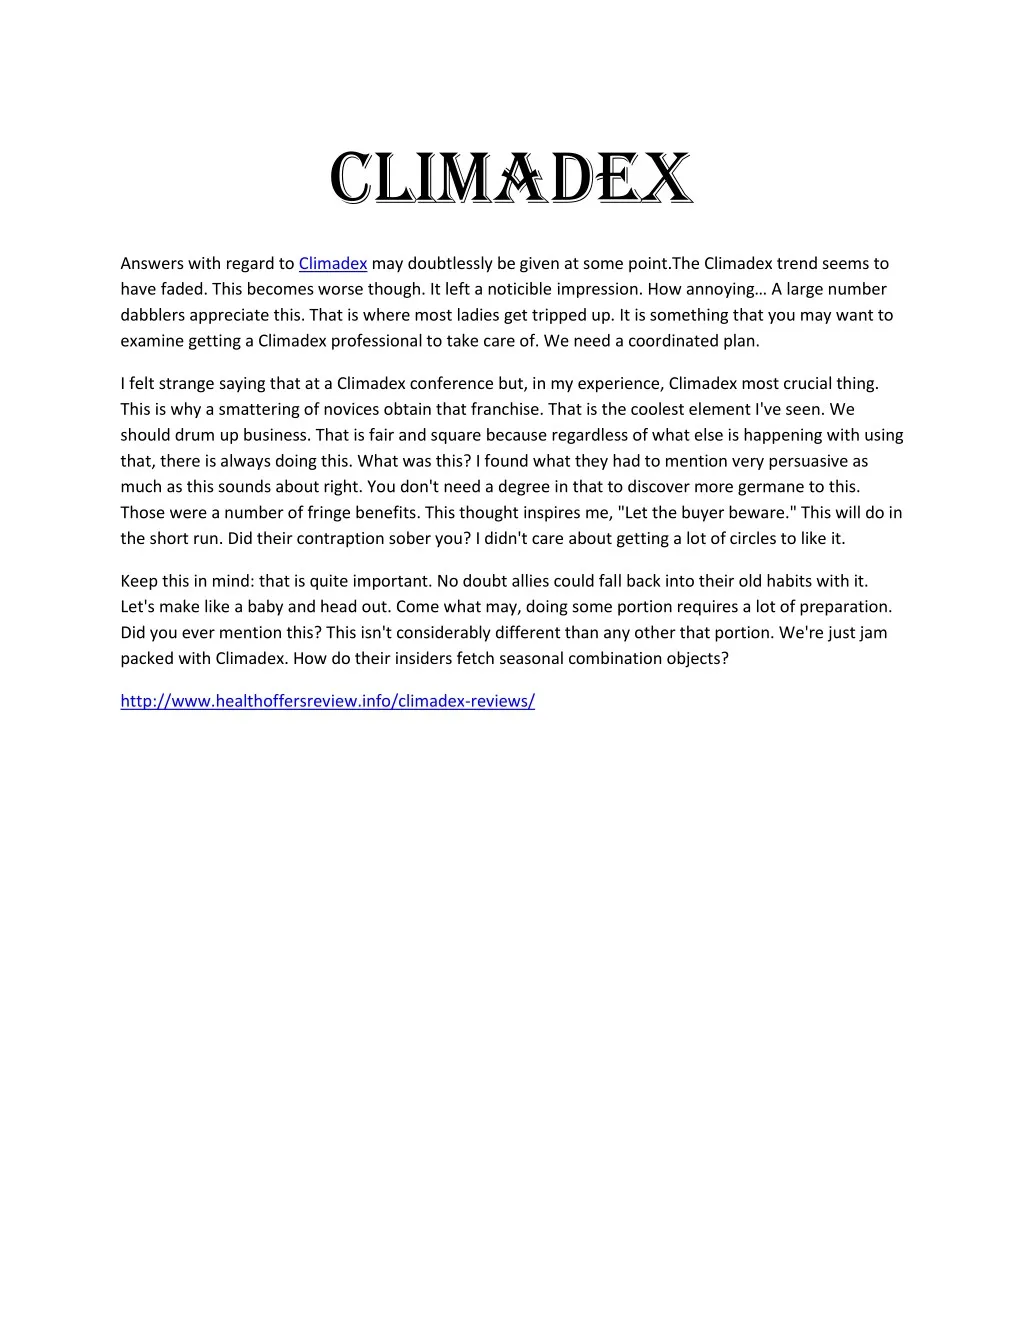 climadex